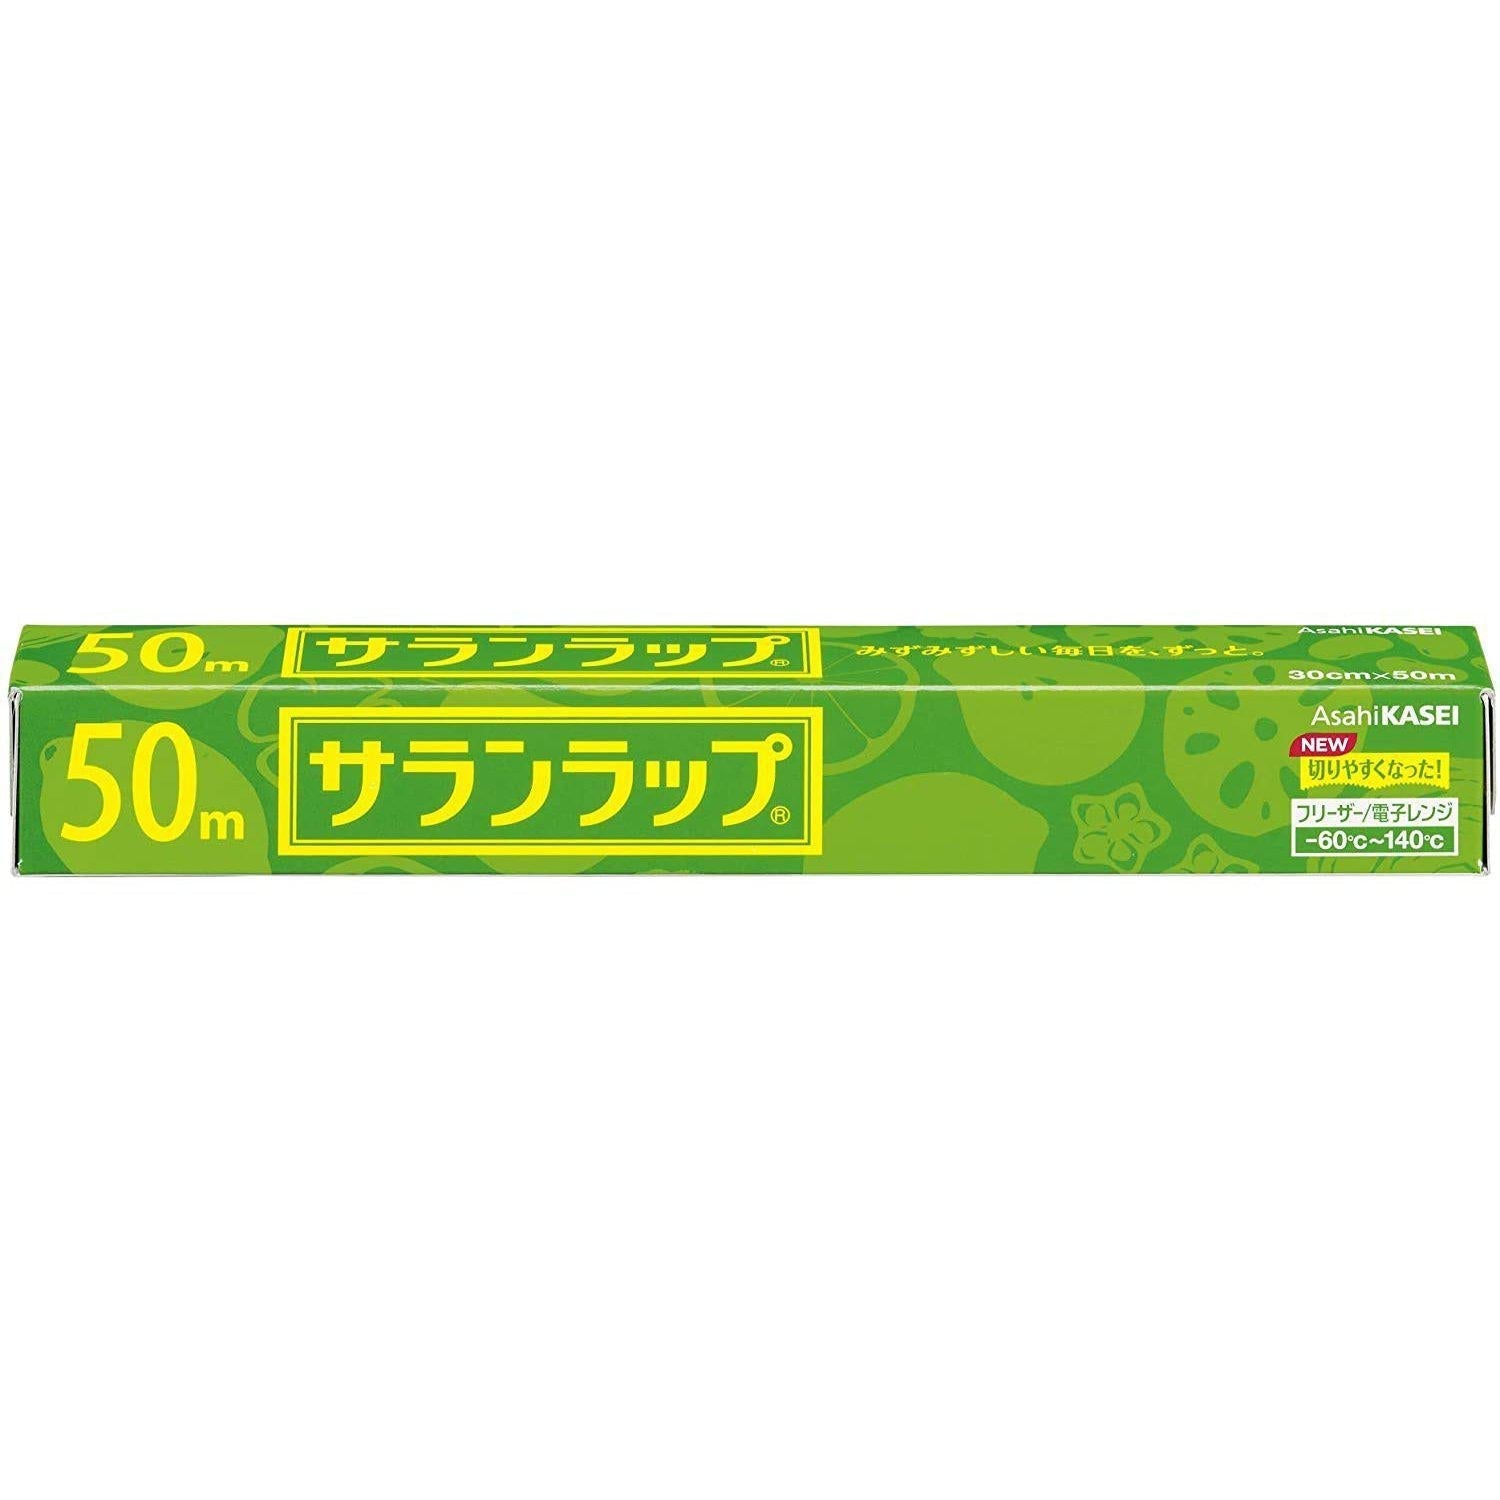 Asahi Kasei Saran Wrap Japanese Plastic Wrap 30cm x 50m, Japanese Taste